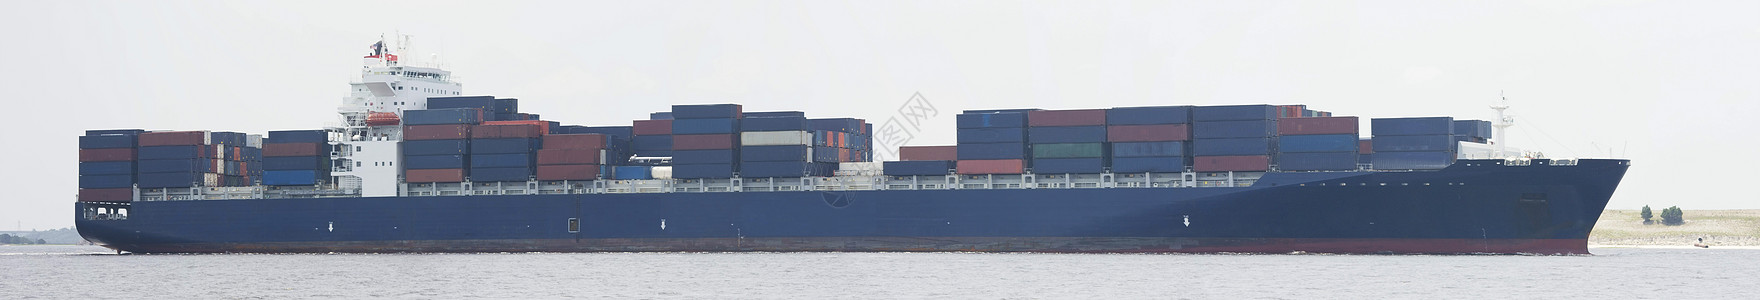 大型集装箱货轮货物商业海洋运输货运工业船运背景图片